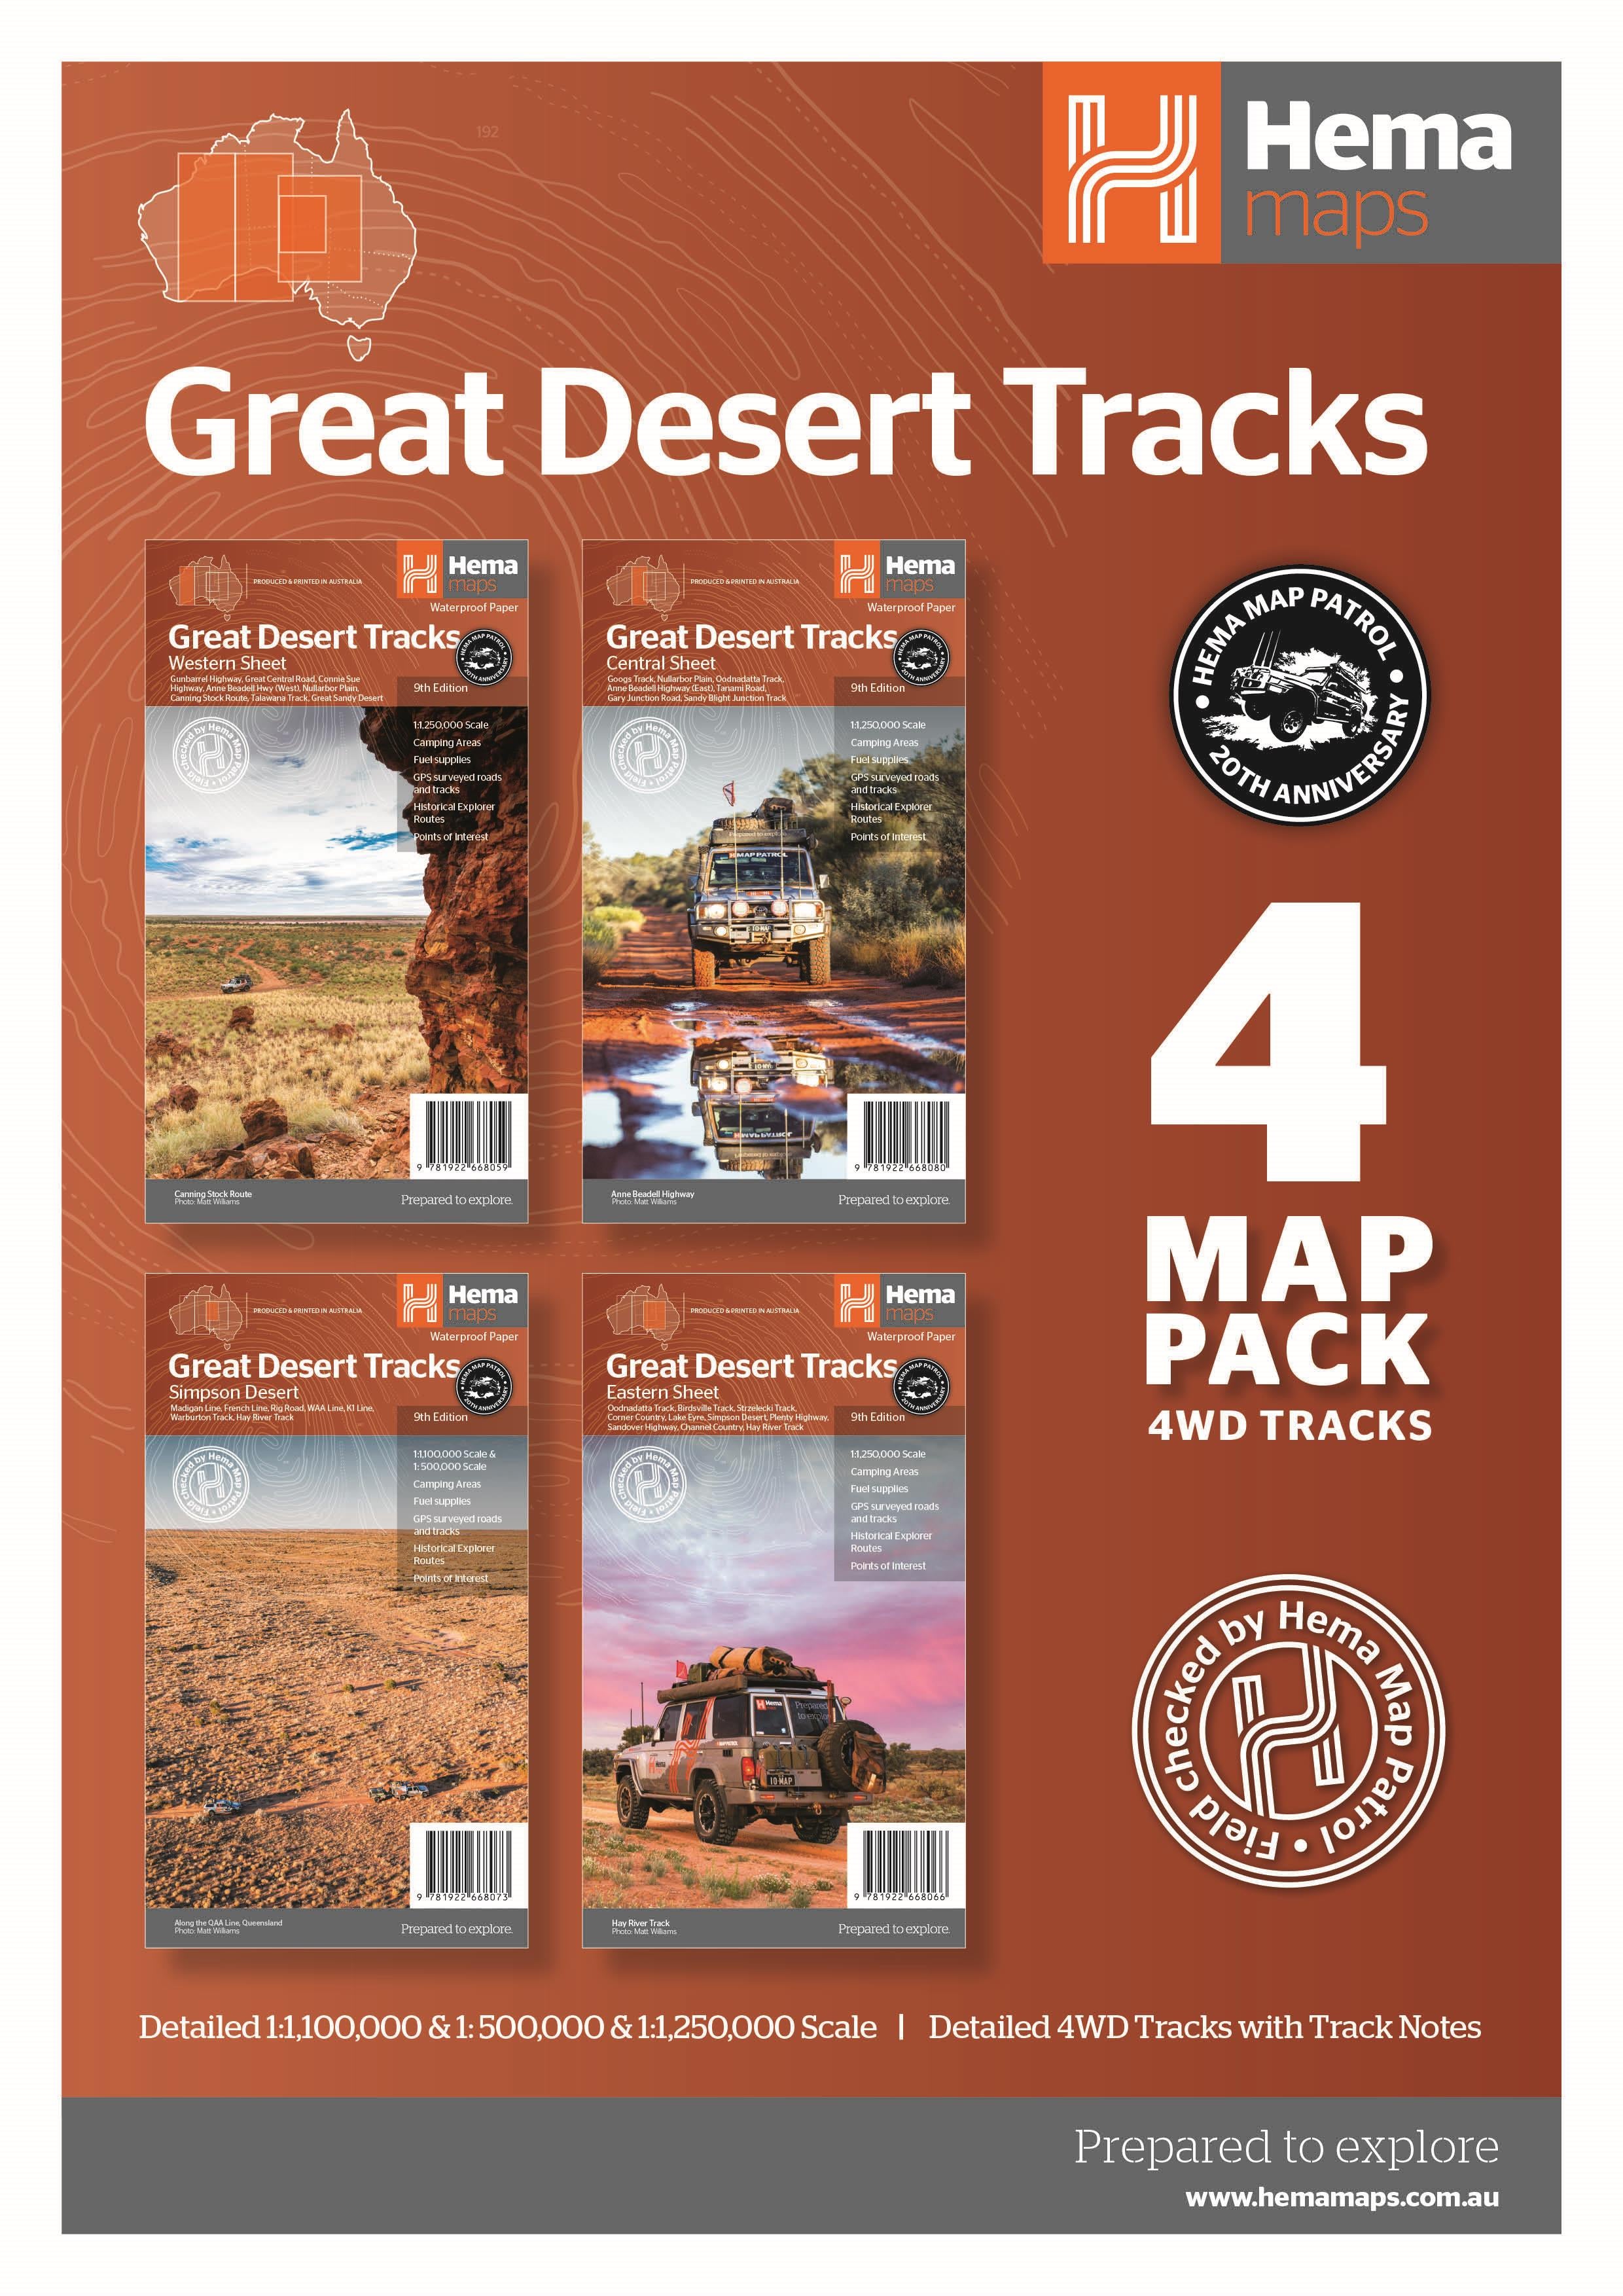 Hema Great Desert Tracks Map Pack | Hema